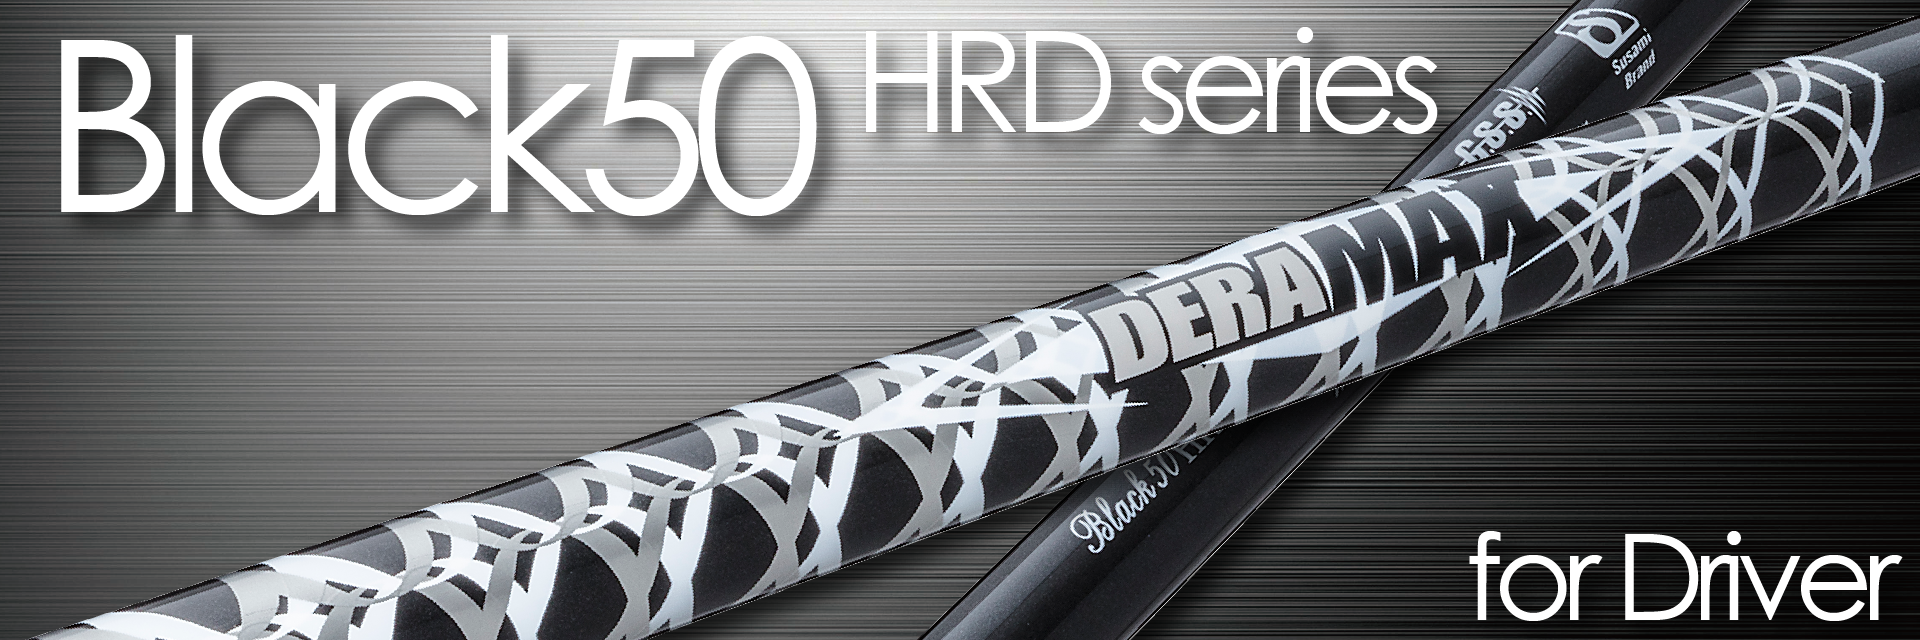 Black50 HRD Series